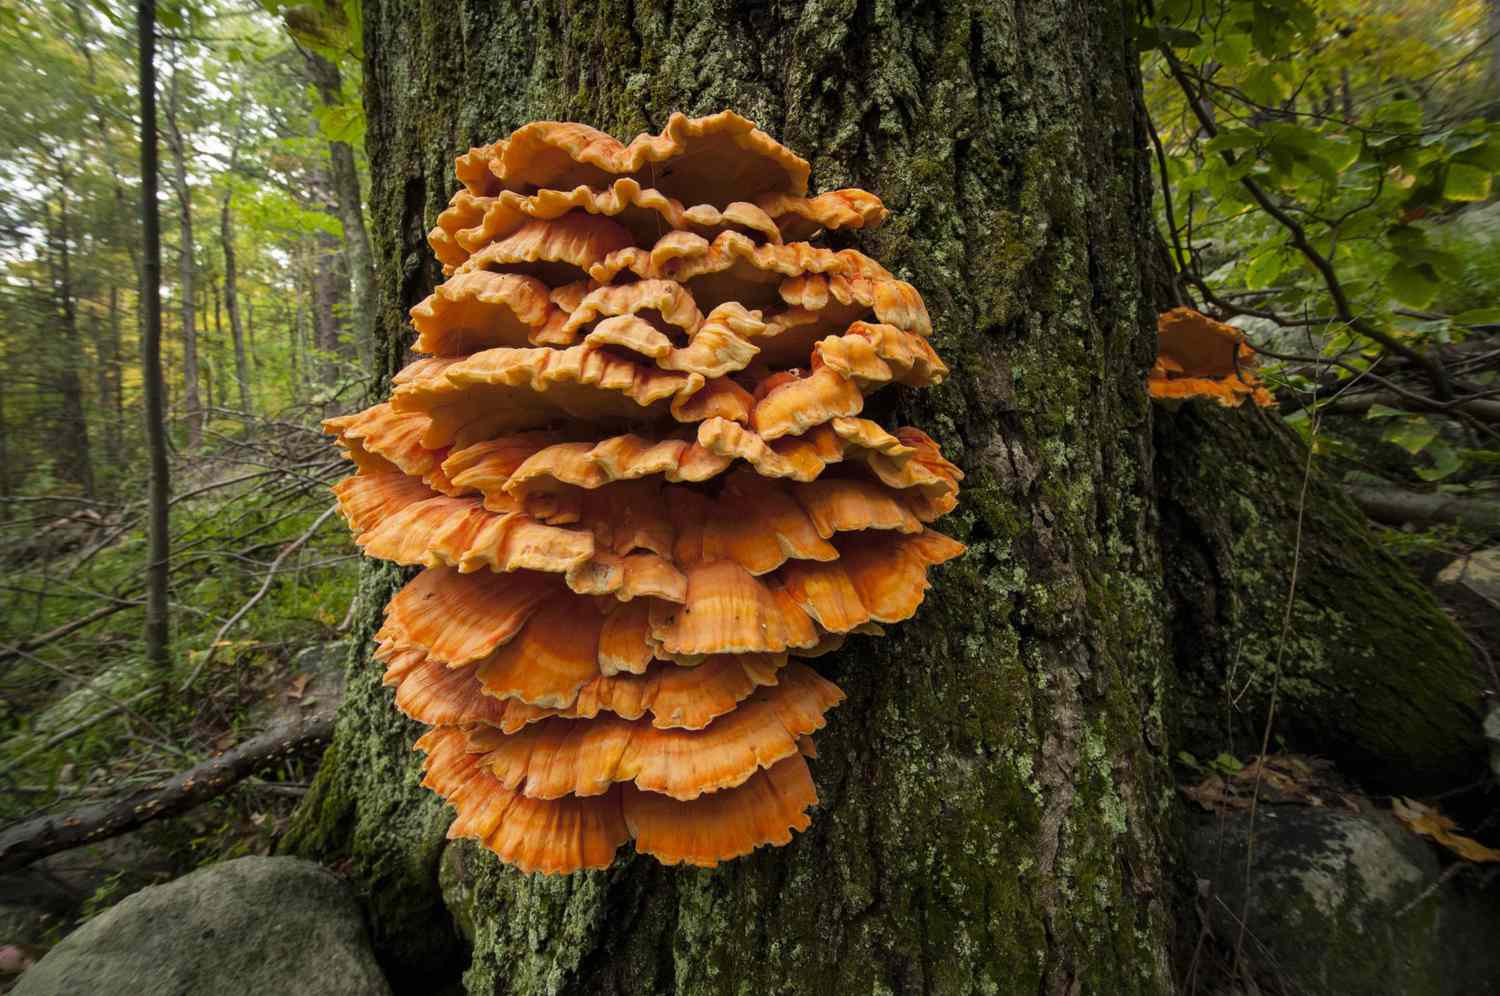 Grande fungo poliporo laranja em uma árvore